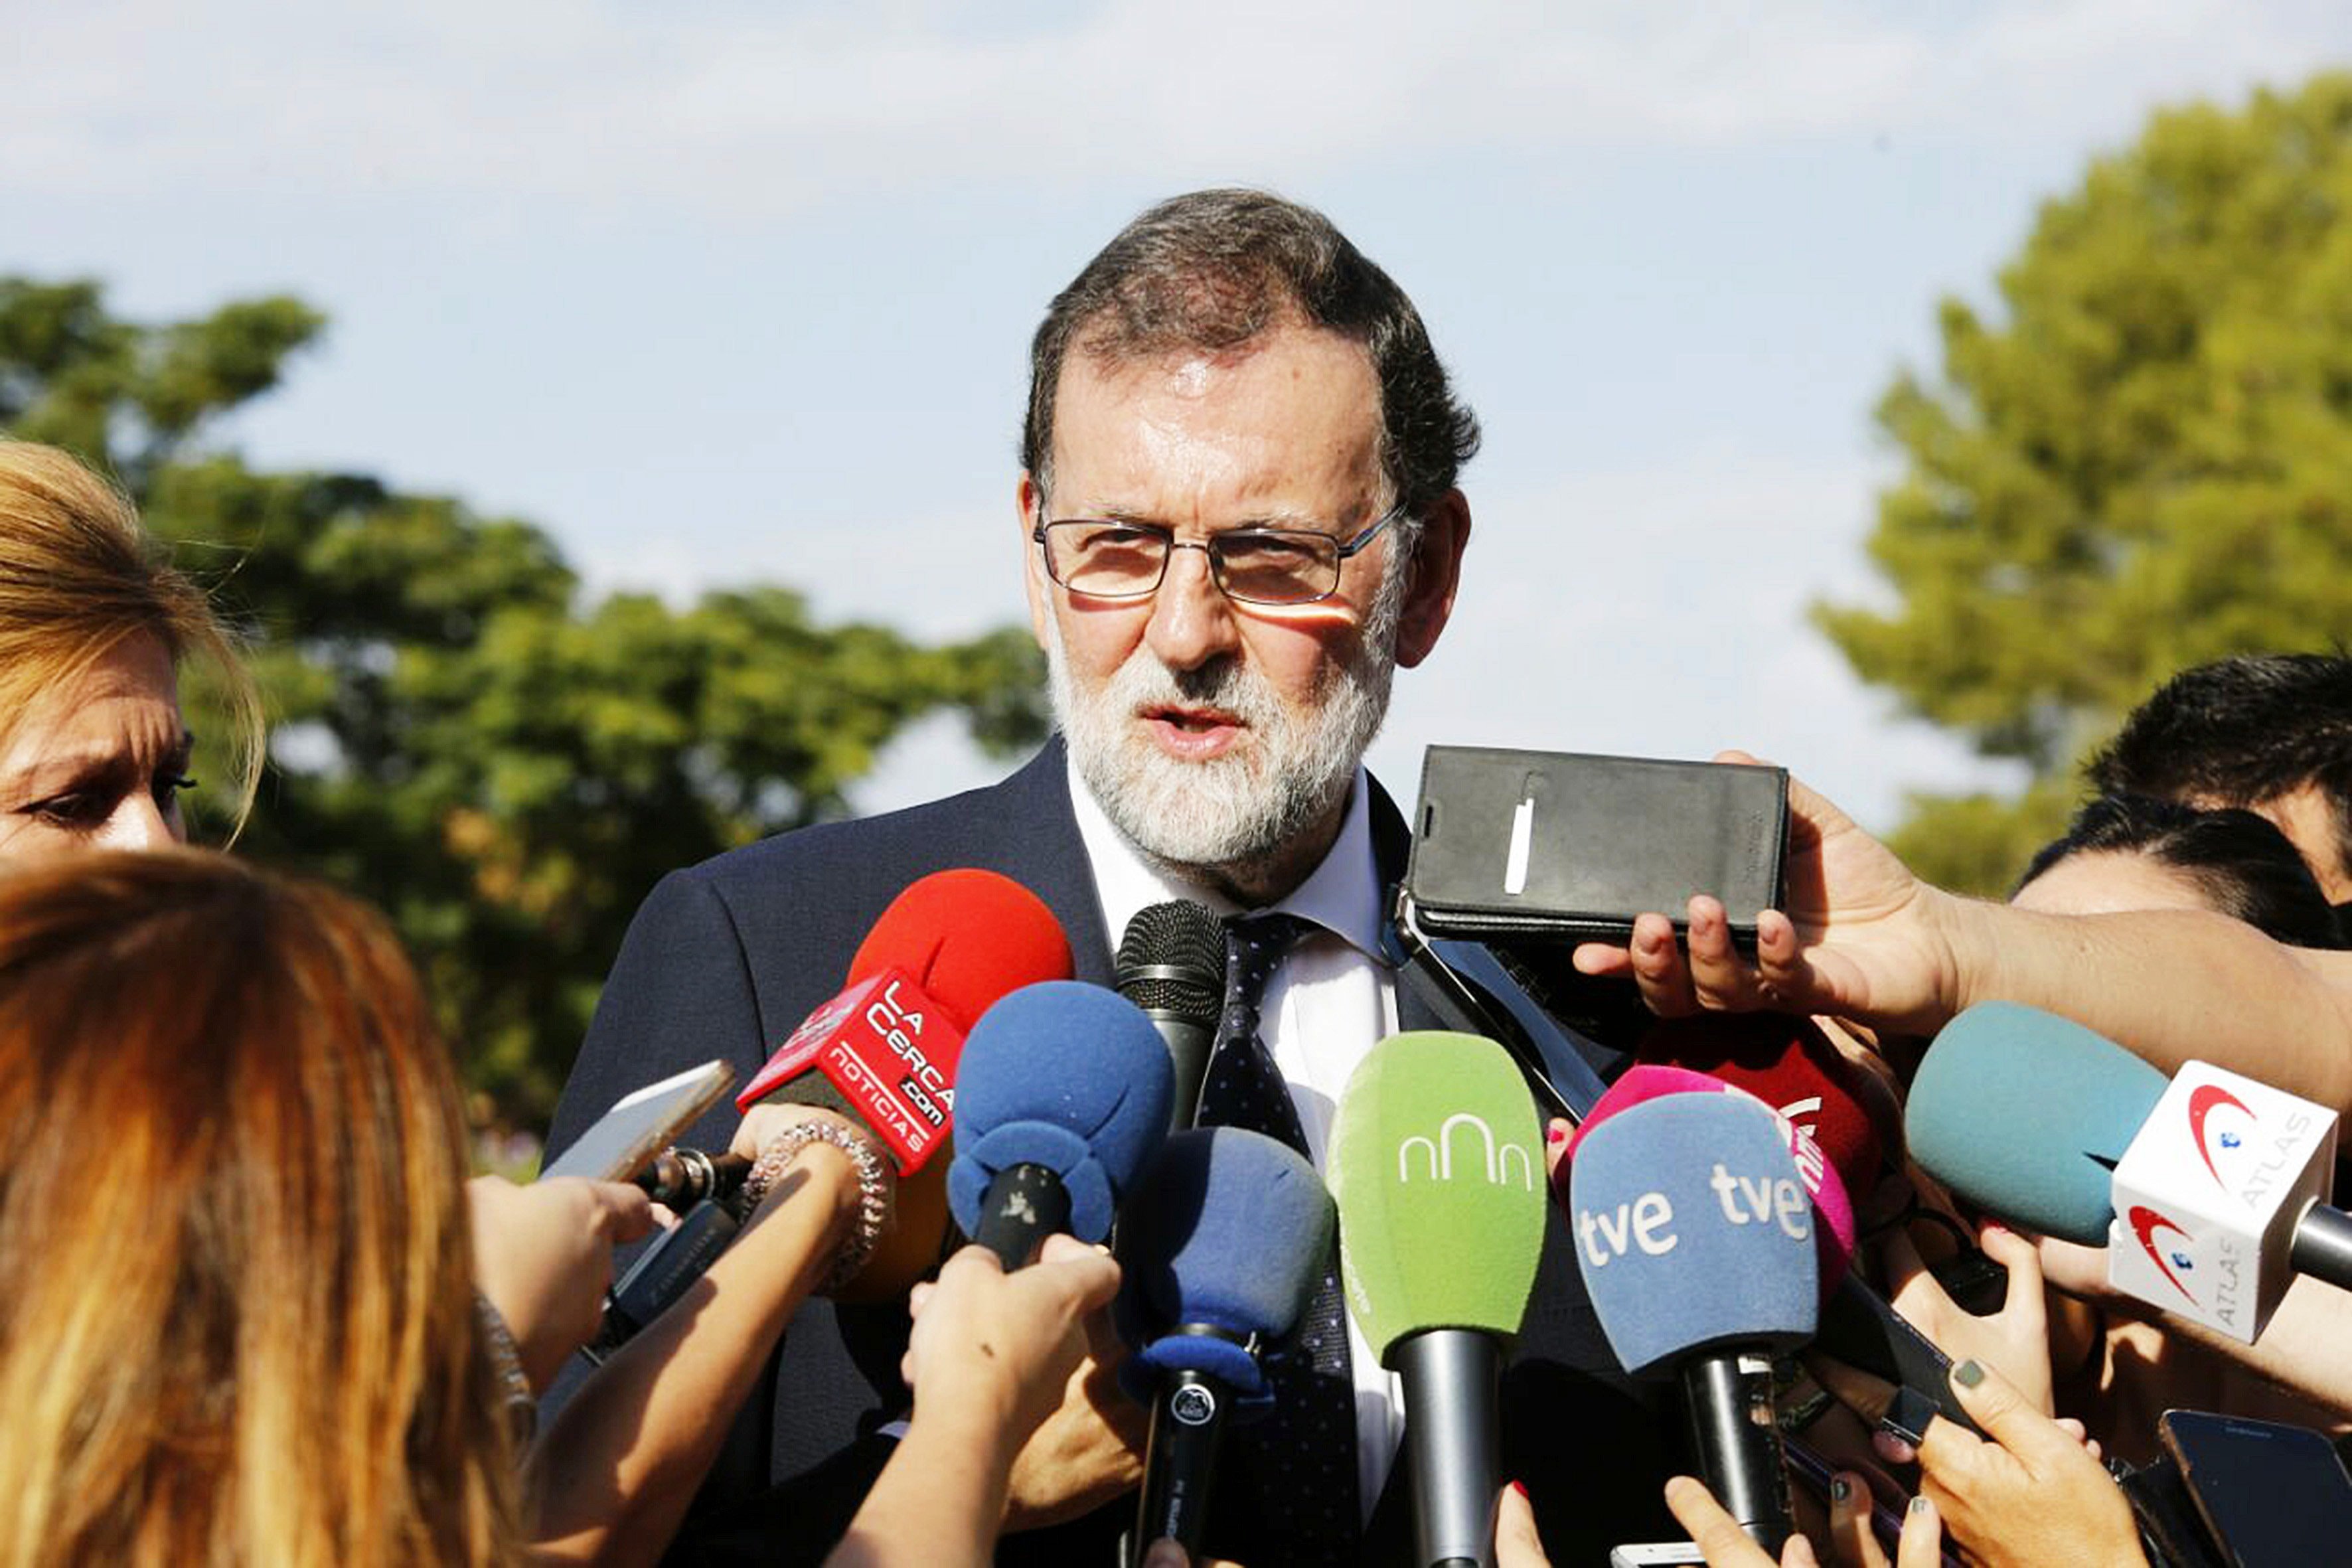 Rajoy preveu destituir el Govern en aplicació del 155, segons 'El Mundo'